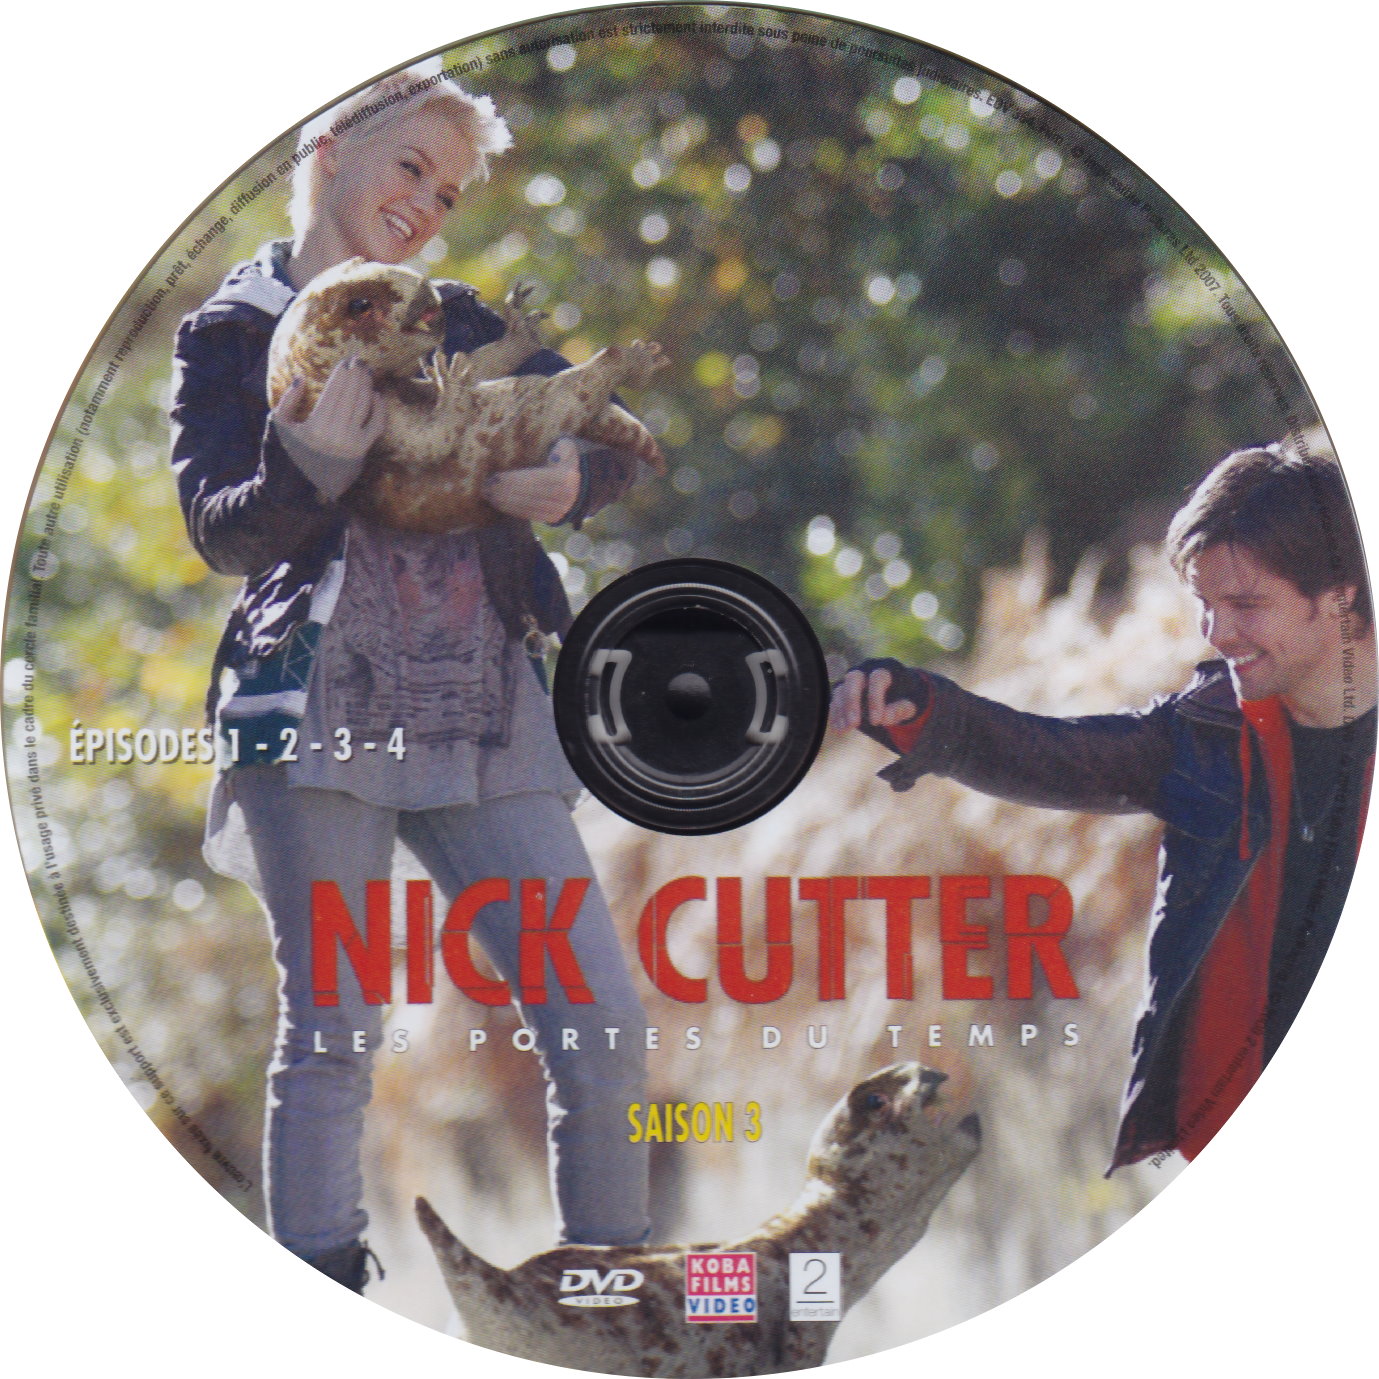 Nick Cutter Les portes du temps Saison 3 DISC 1